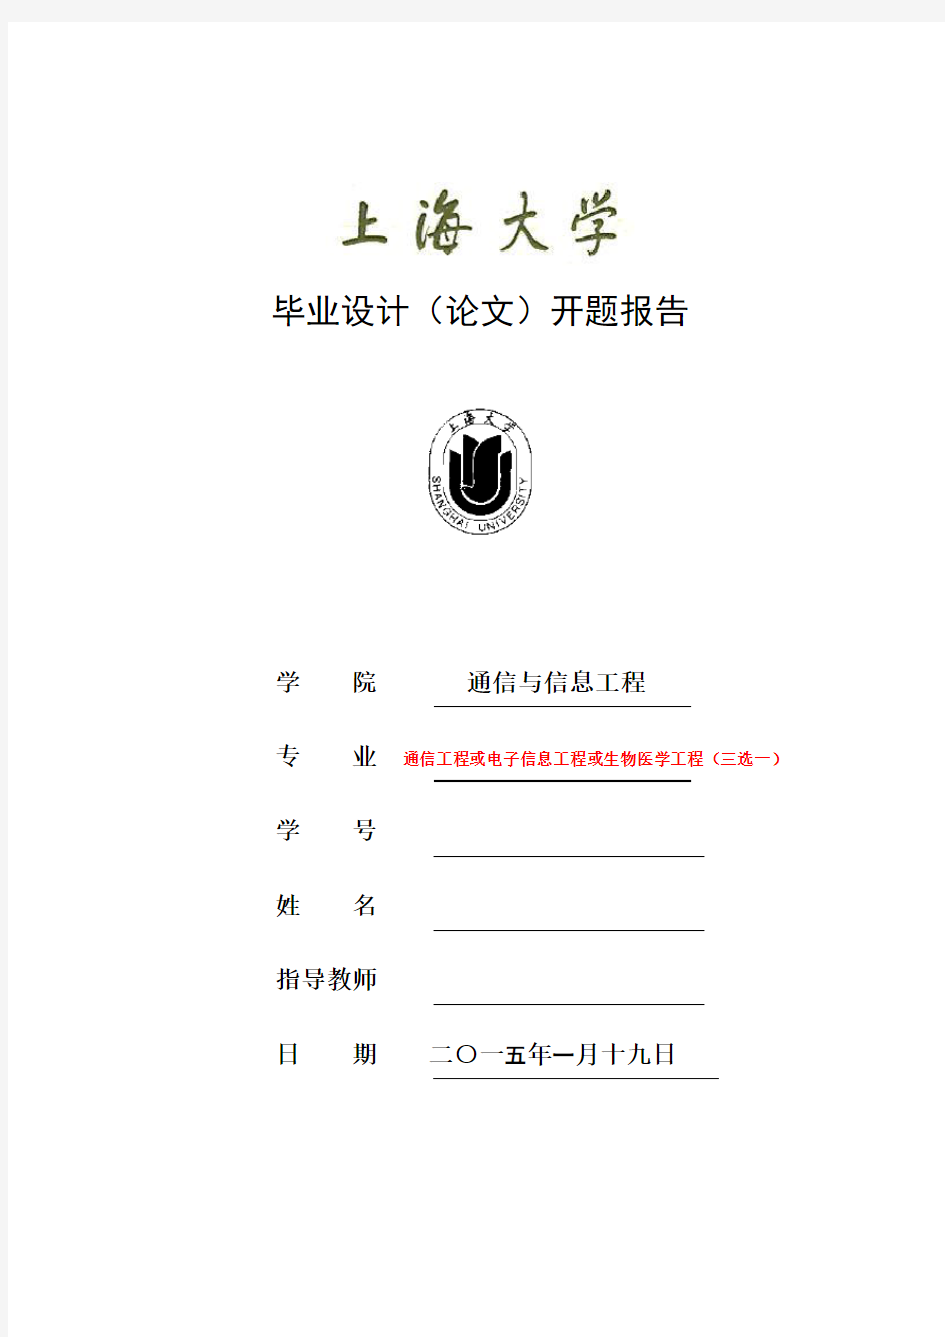 上海大学毕业设计(论文)开题报告